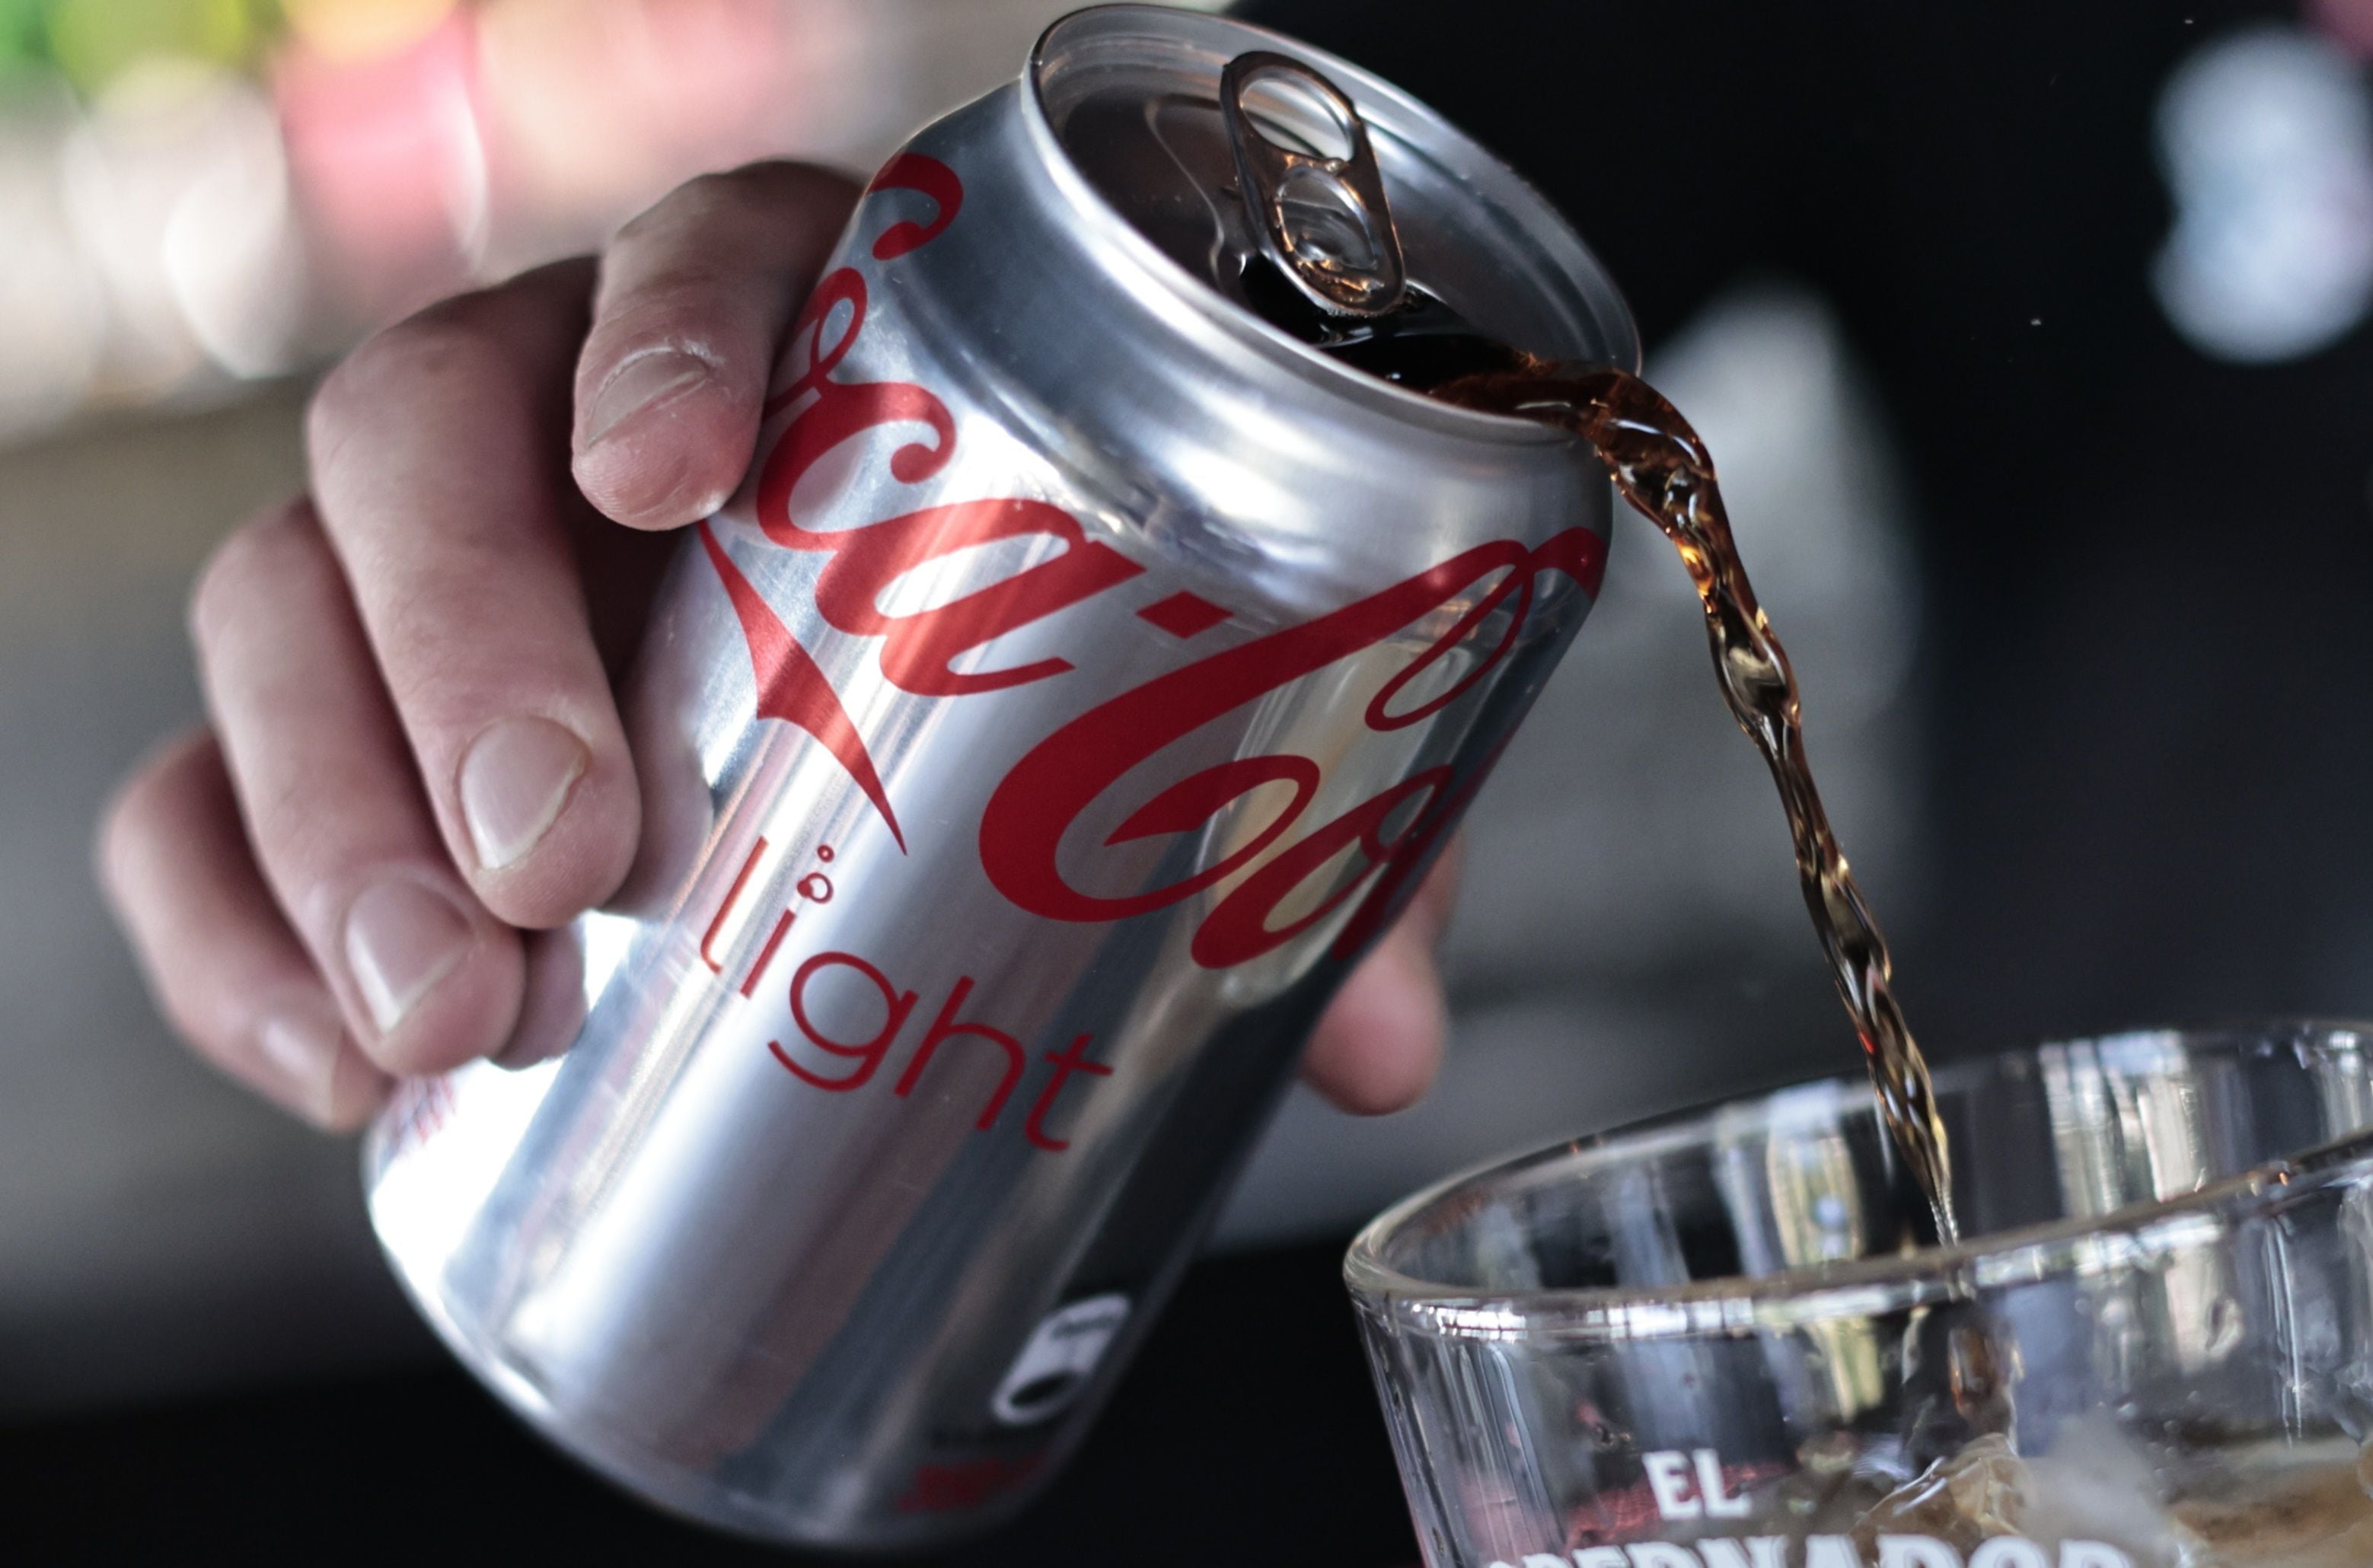 coca-cola zero o light: ¿cuál de las dos es más saludable?